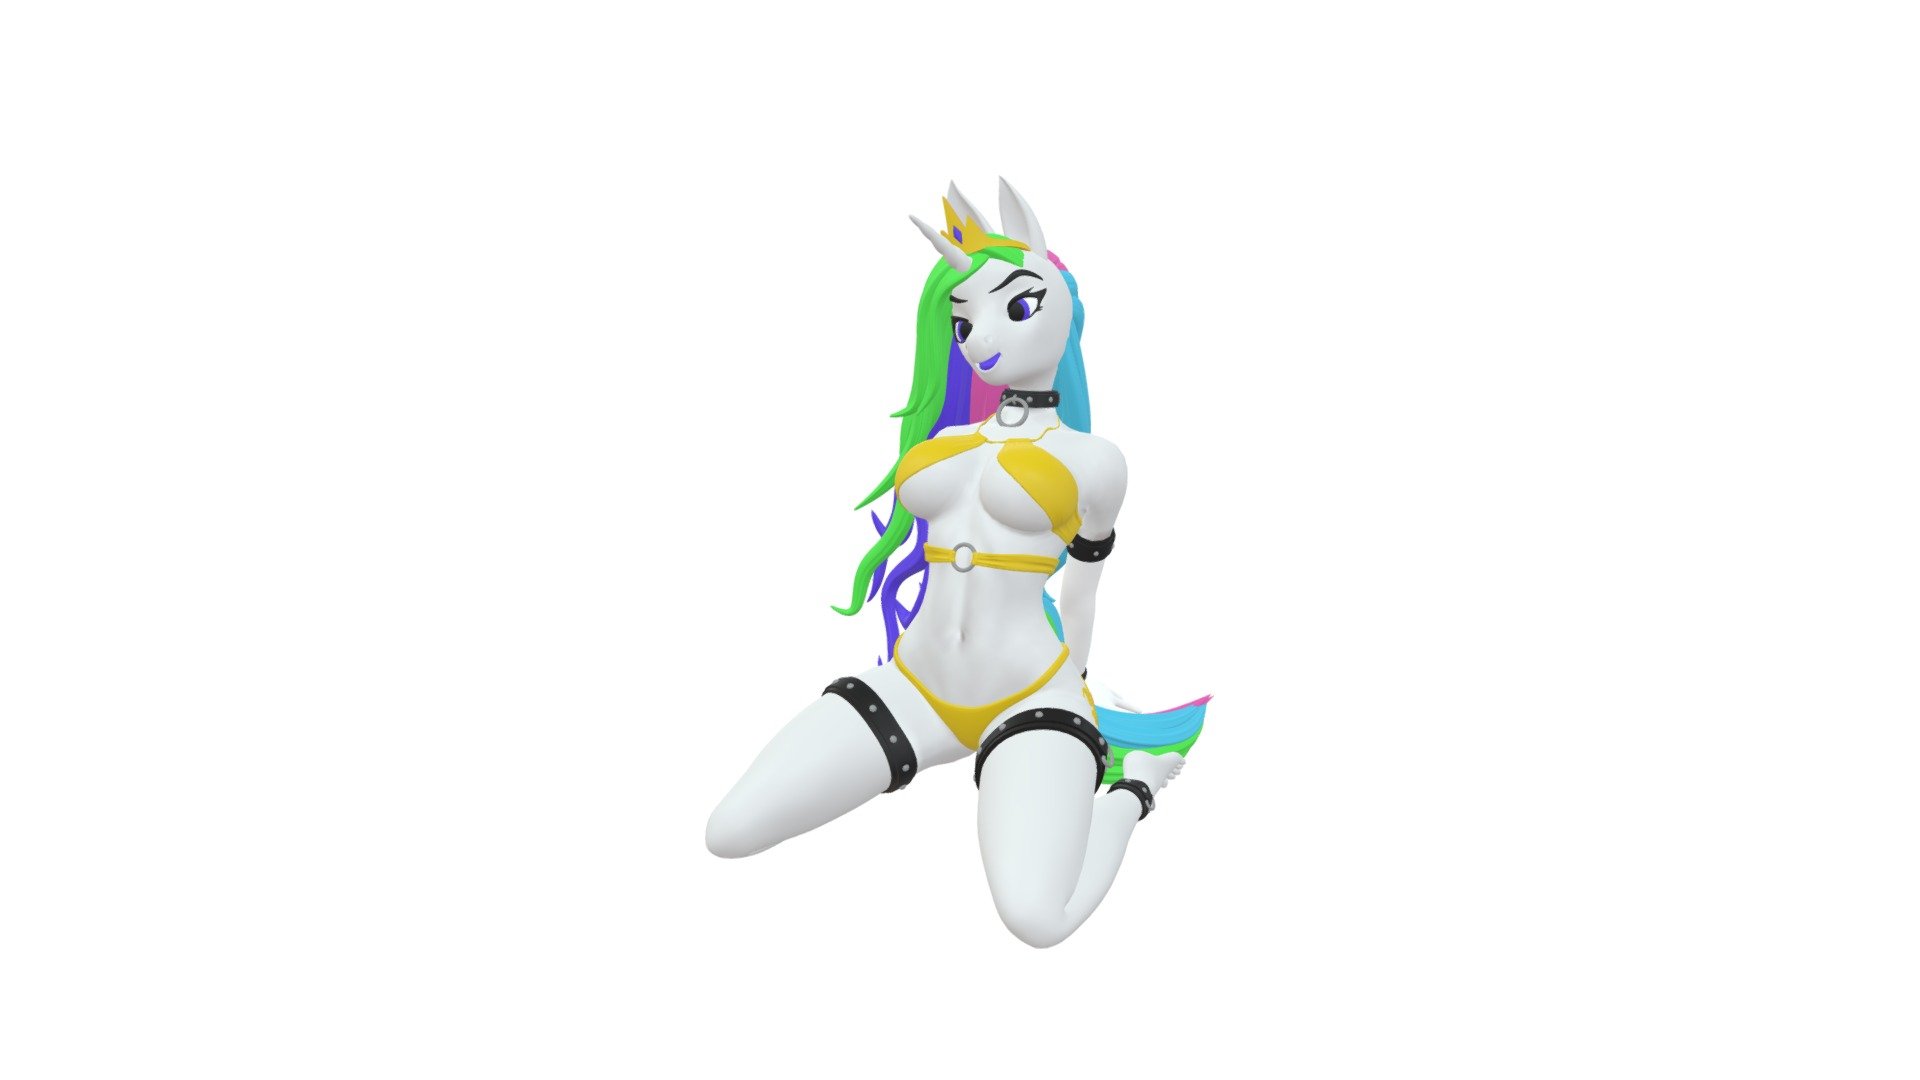 Princess Celestia furry girl ready for action!

Find the Stl files for 3D printing at:

https://3doit.net/ - Pony Celeste - 3D model by 3doit.net 3d model